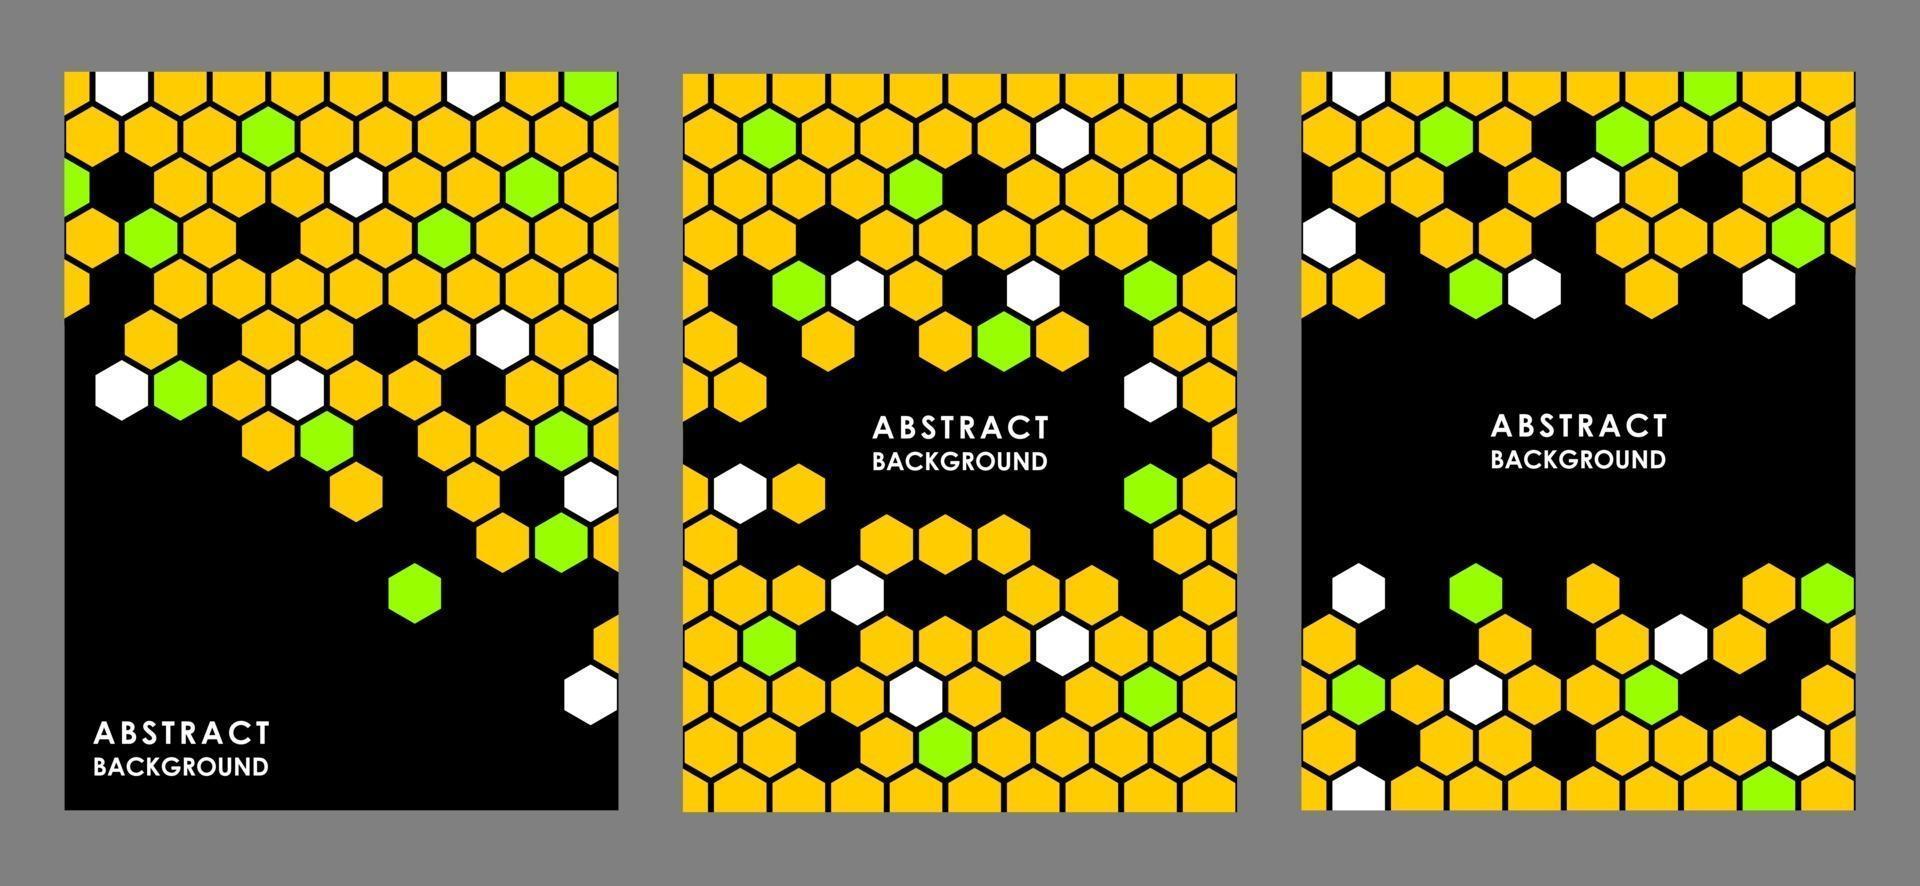 pôsteres abstratos em preto com pentes ou hexágonos multicoloridos vetor